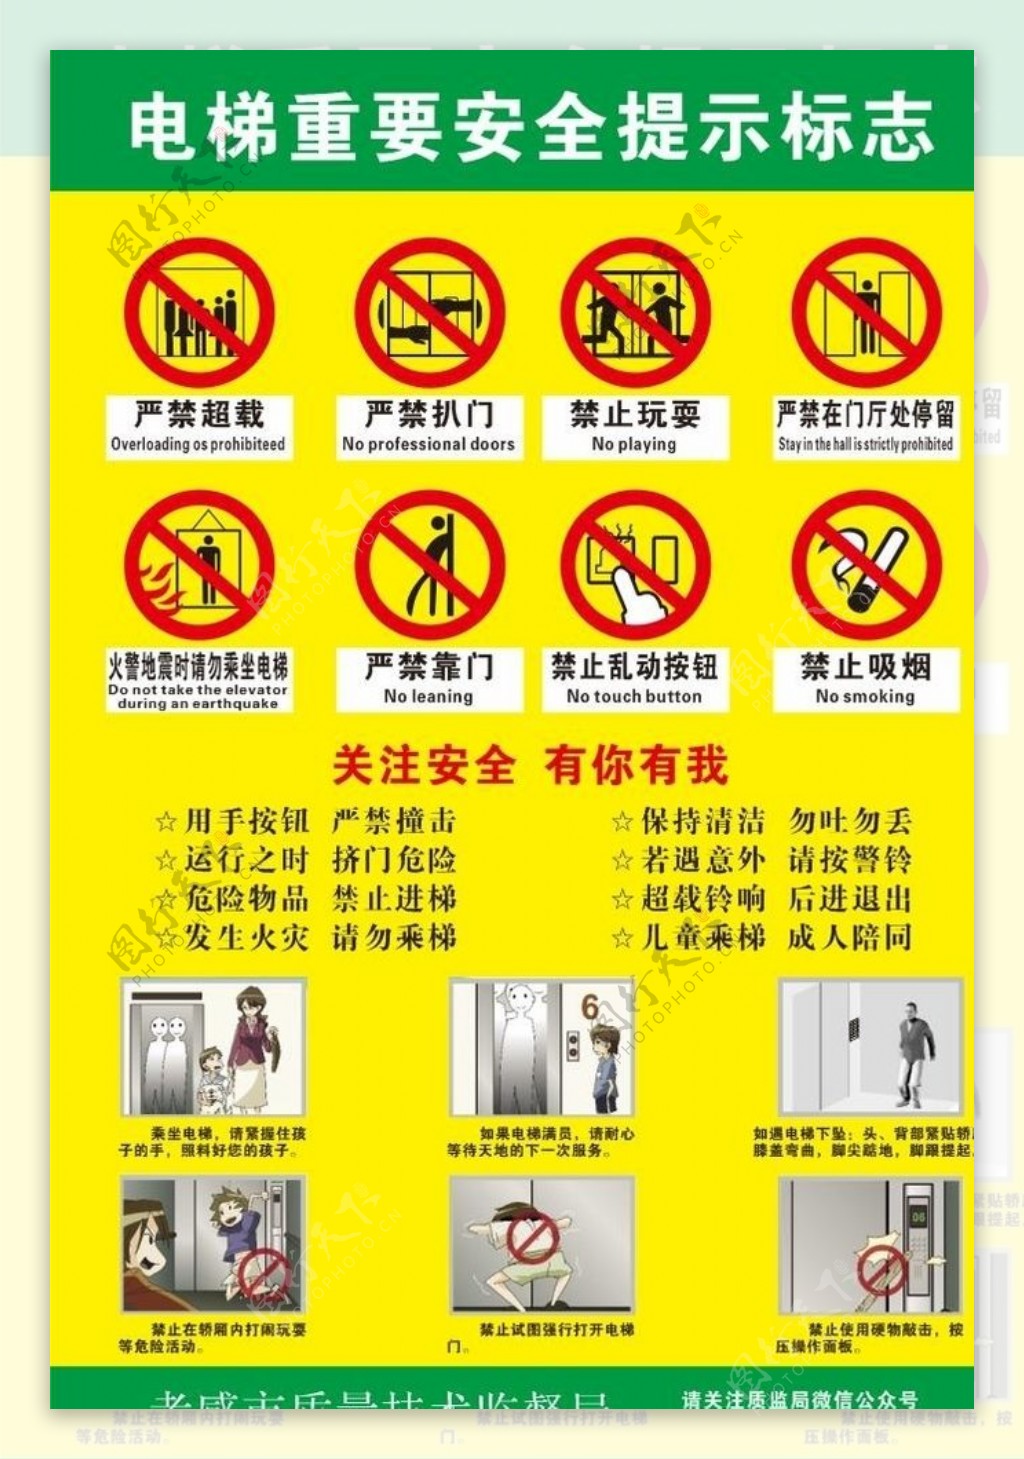 电梯重要安全提示标志